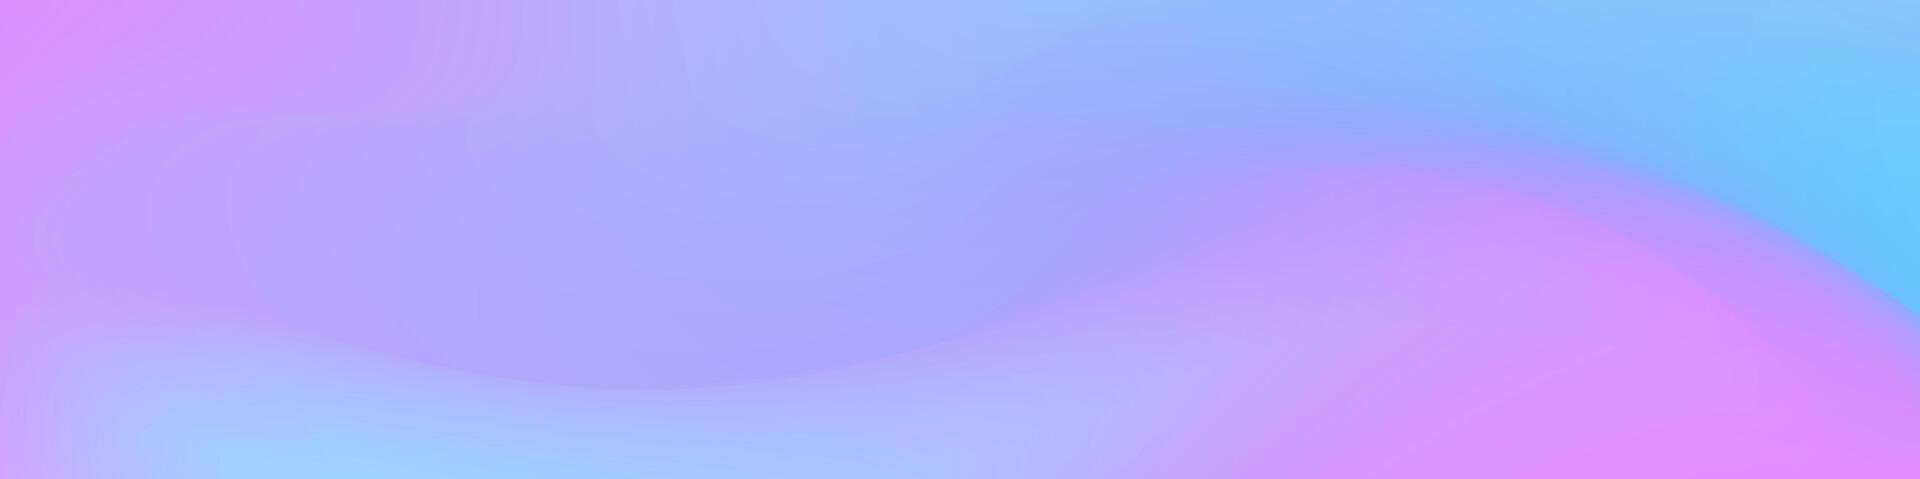 Gradient Gittergewebe Hintergrund im Schatten von Rosa und Blau. Ideal zum Netz Banner, Sozial Medien Beiträge, oder irgendein Design Projekt Das erfordert ein beruhigend Hintergrund vektor